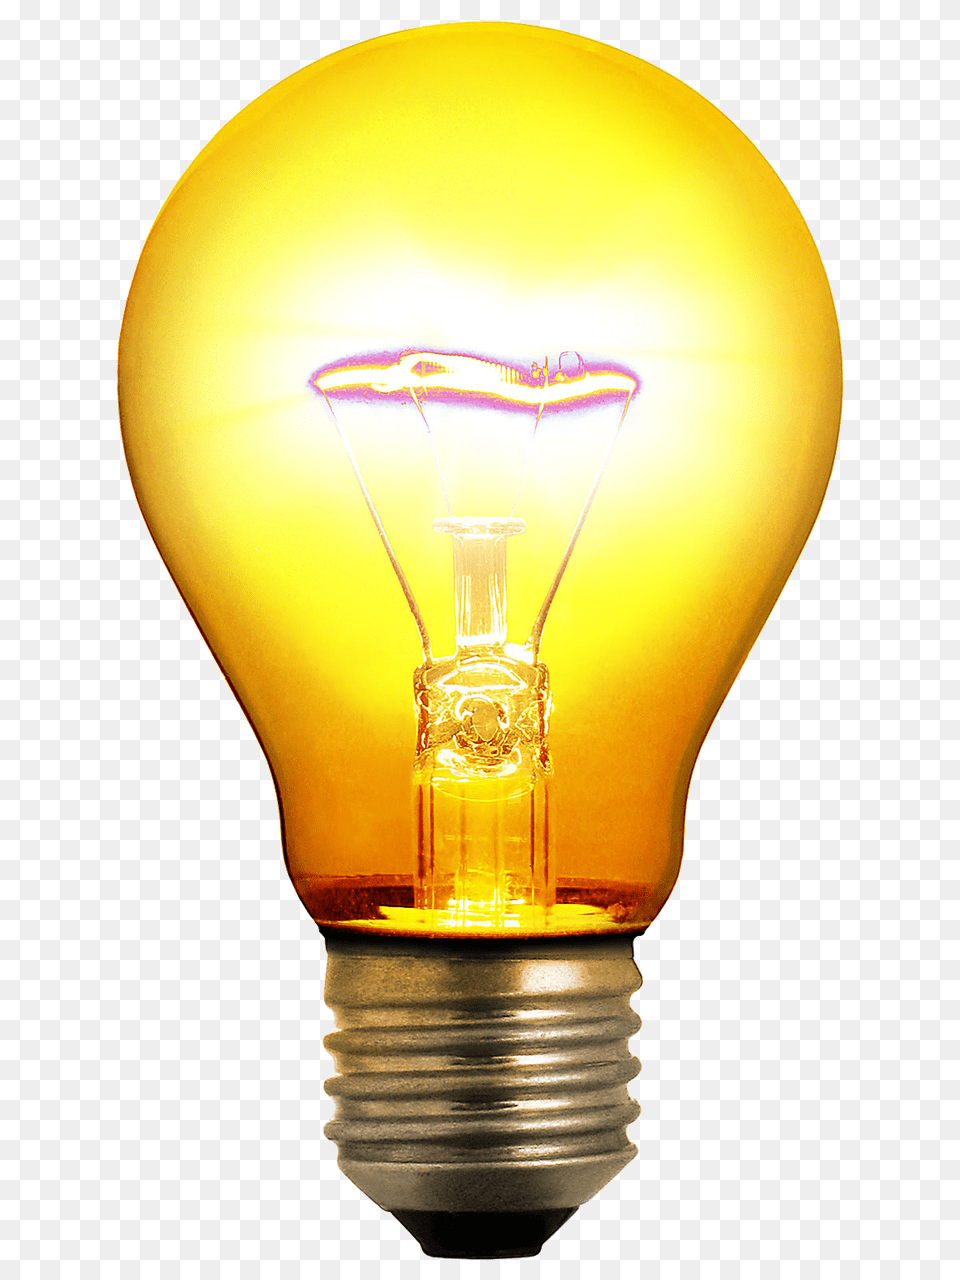 Bulb, Light, Lightbulb, Lamp Free Png